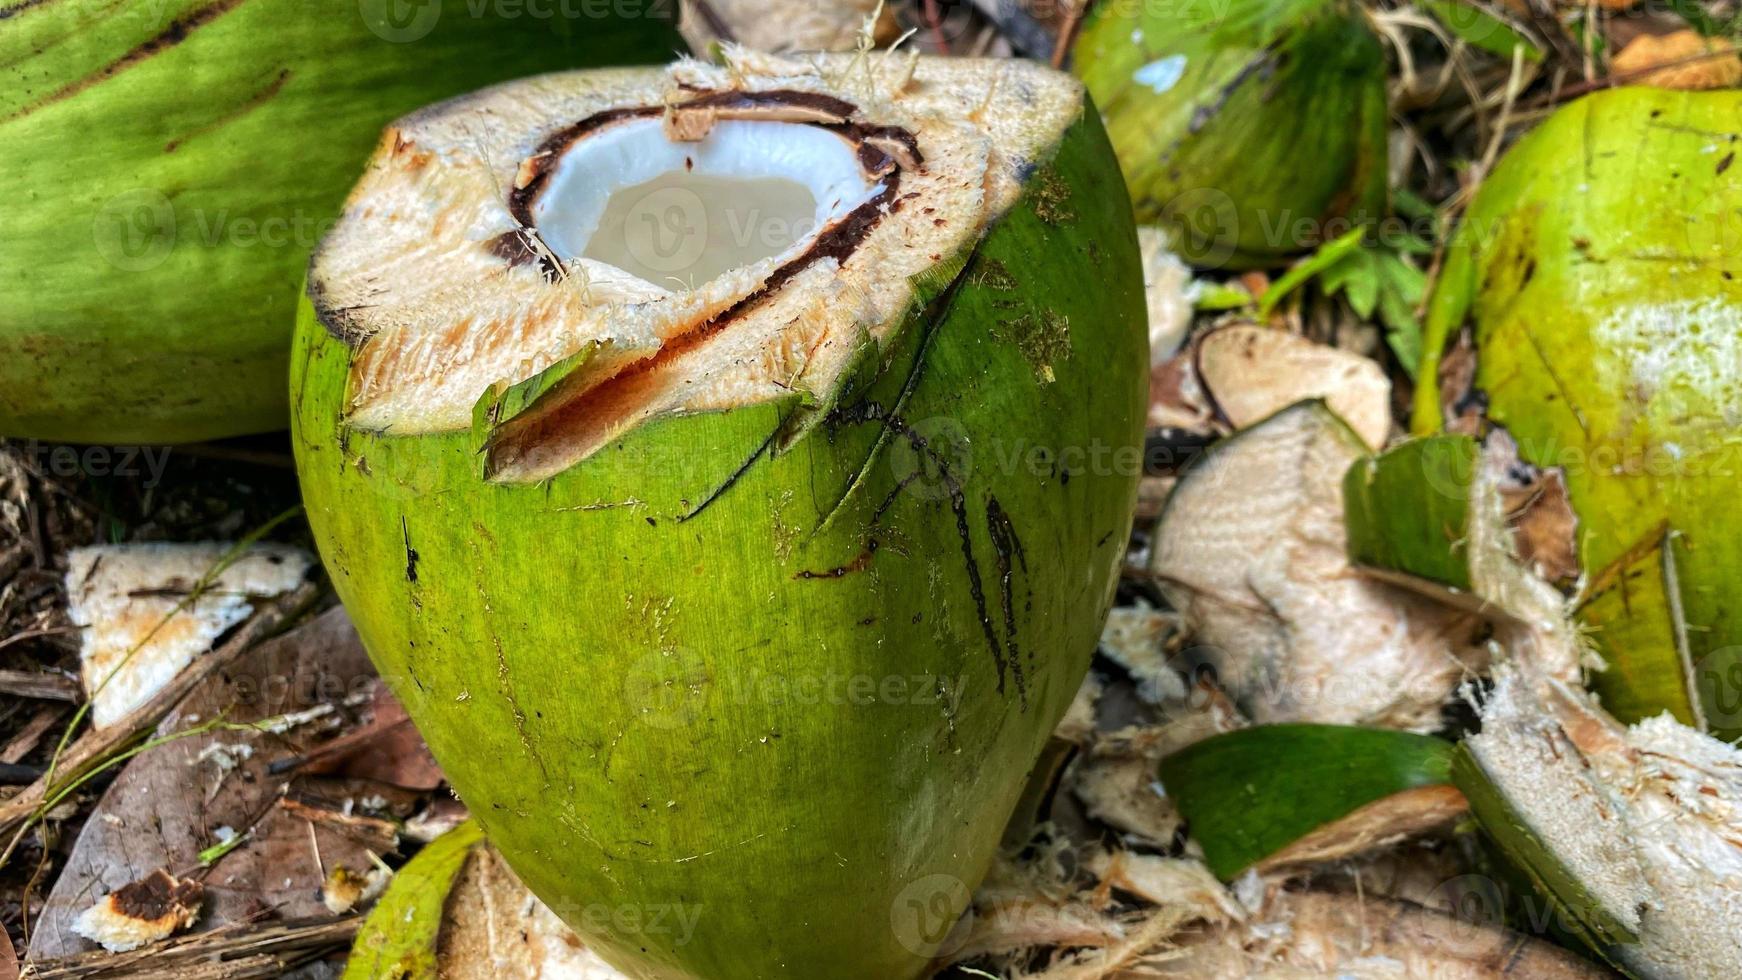 regarde de belles noix de coco vertes dans le jardin de noix de coco photo